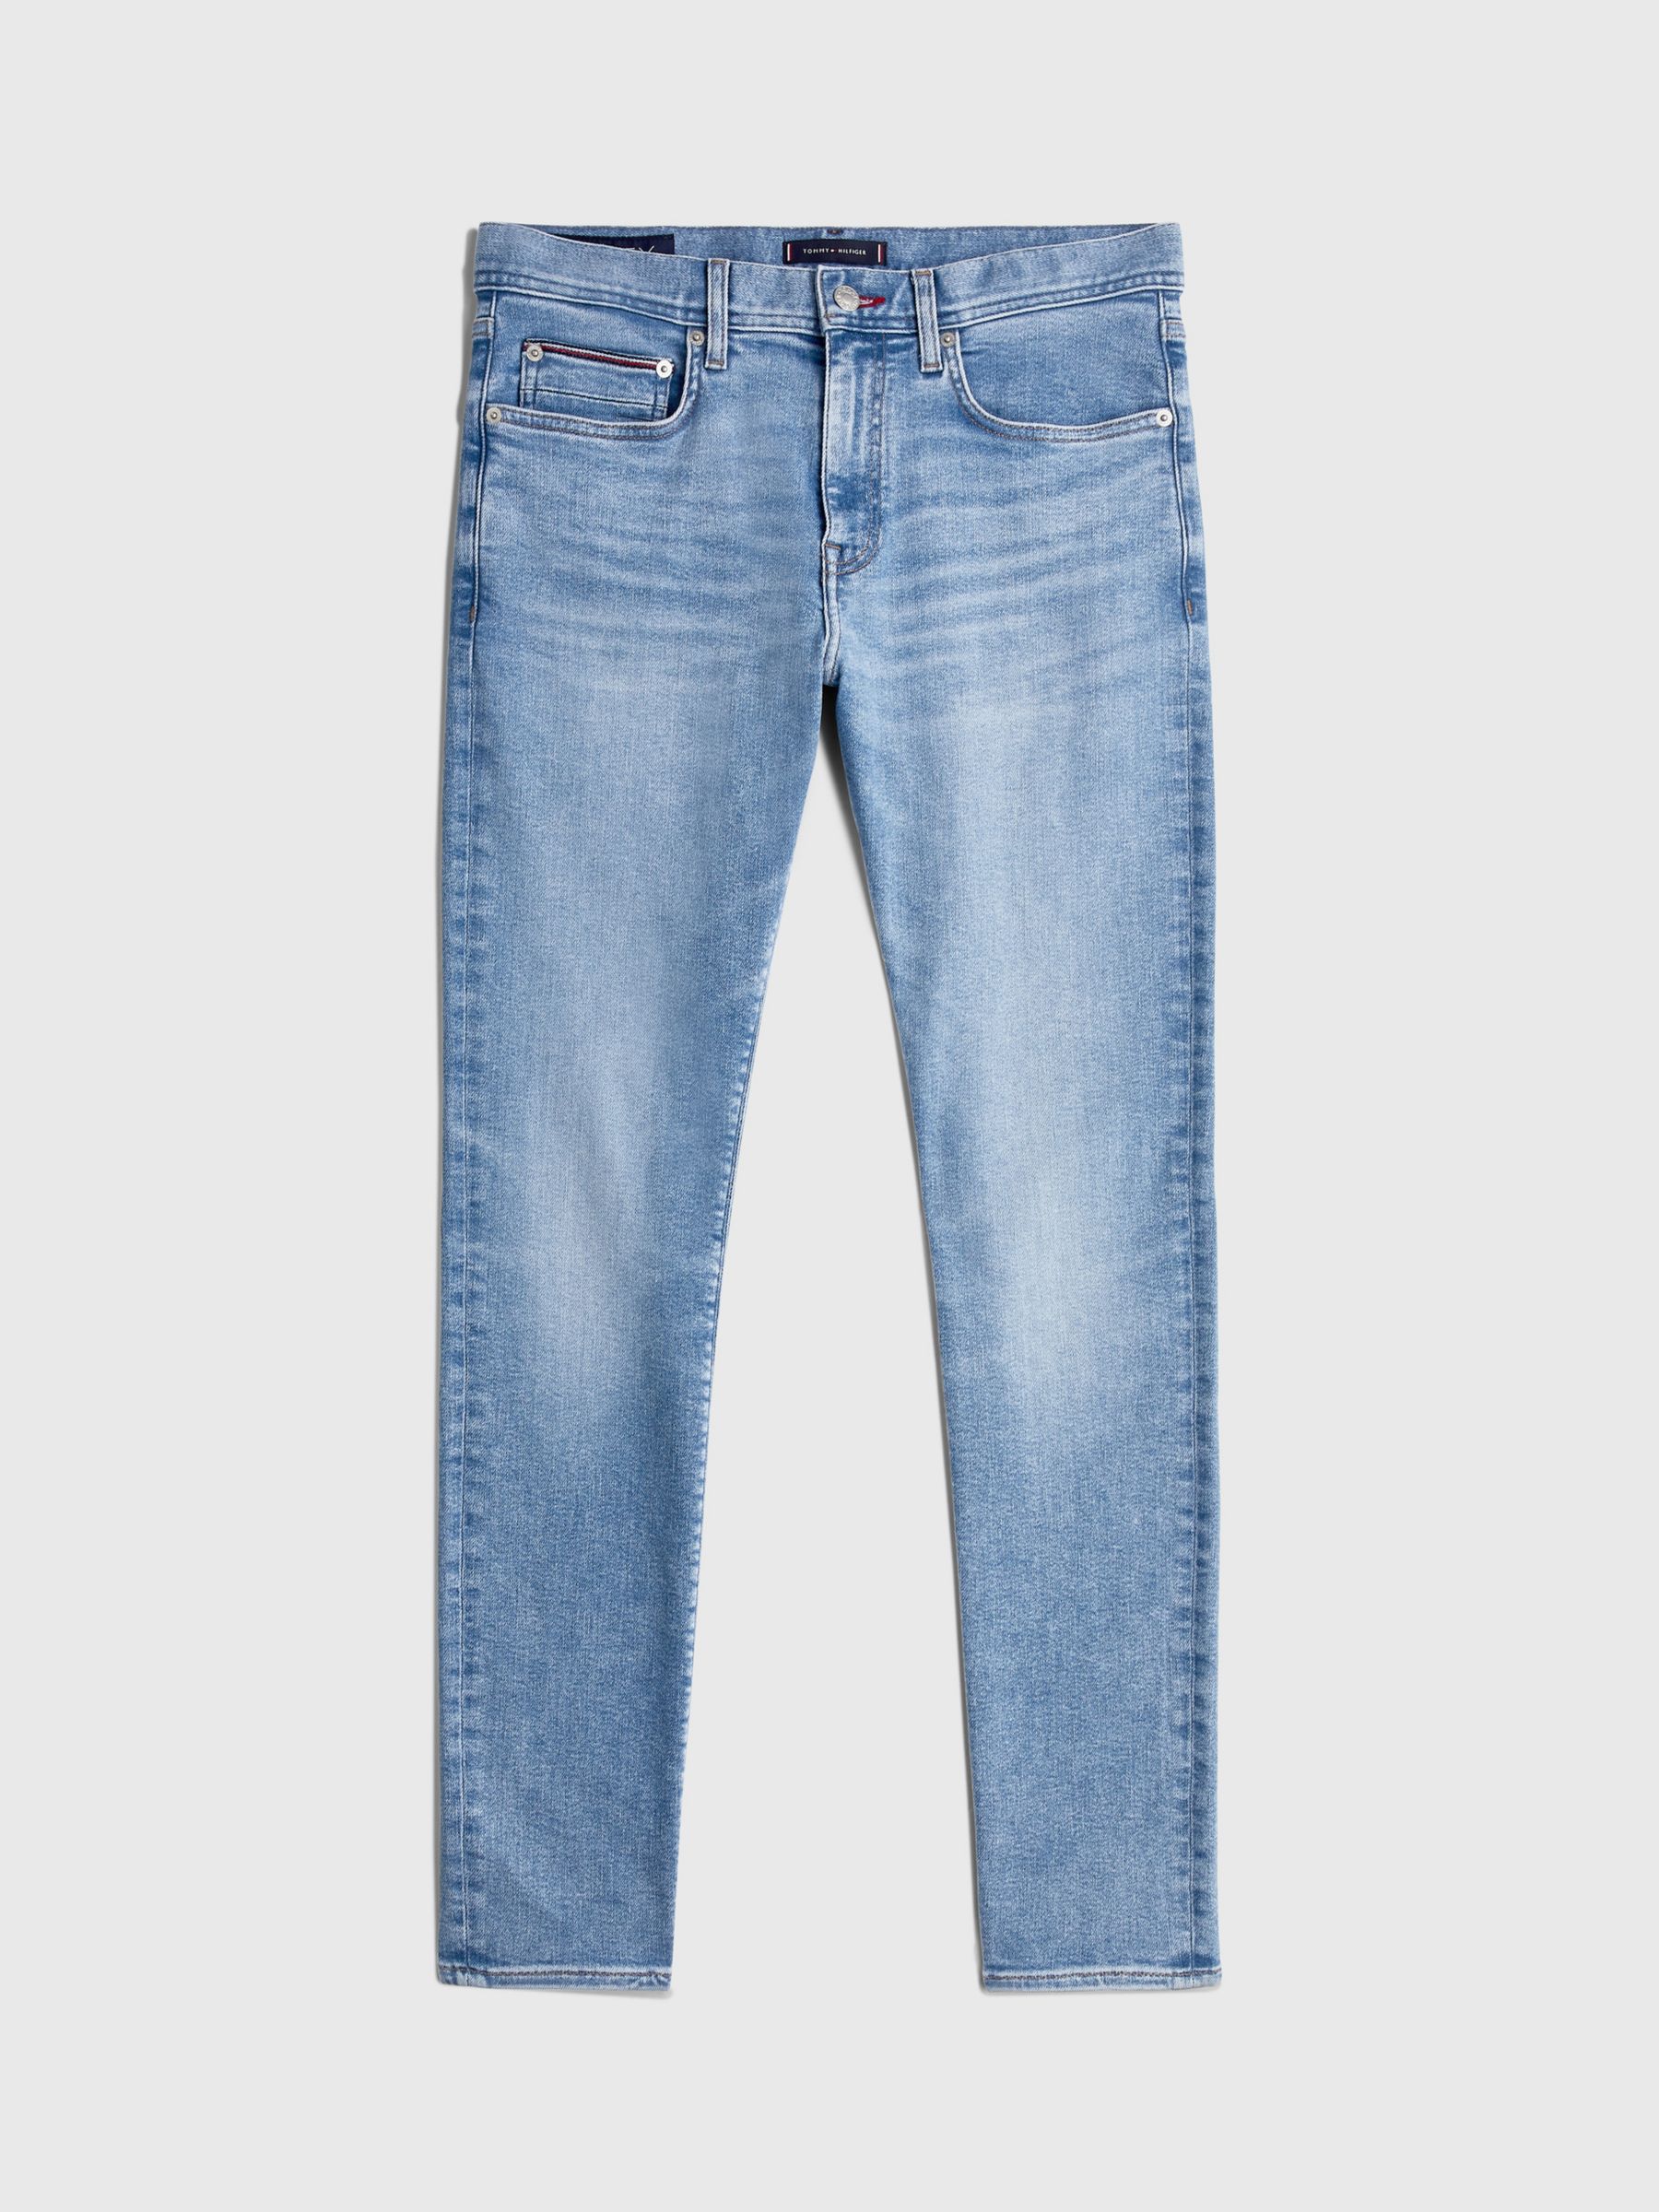 Buy Tommy Hilfiger Extra Slim Layton Jeans, Blue Online at johnlewis.com